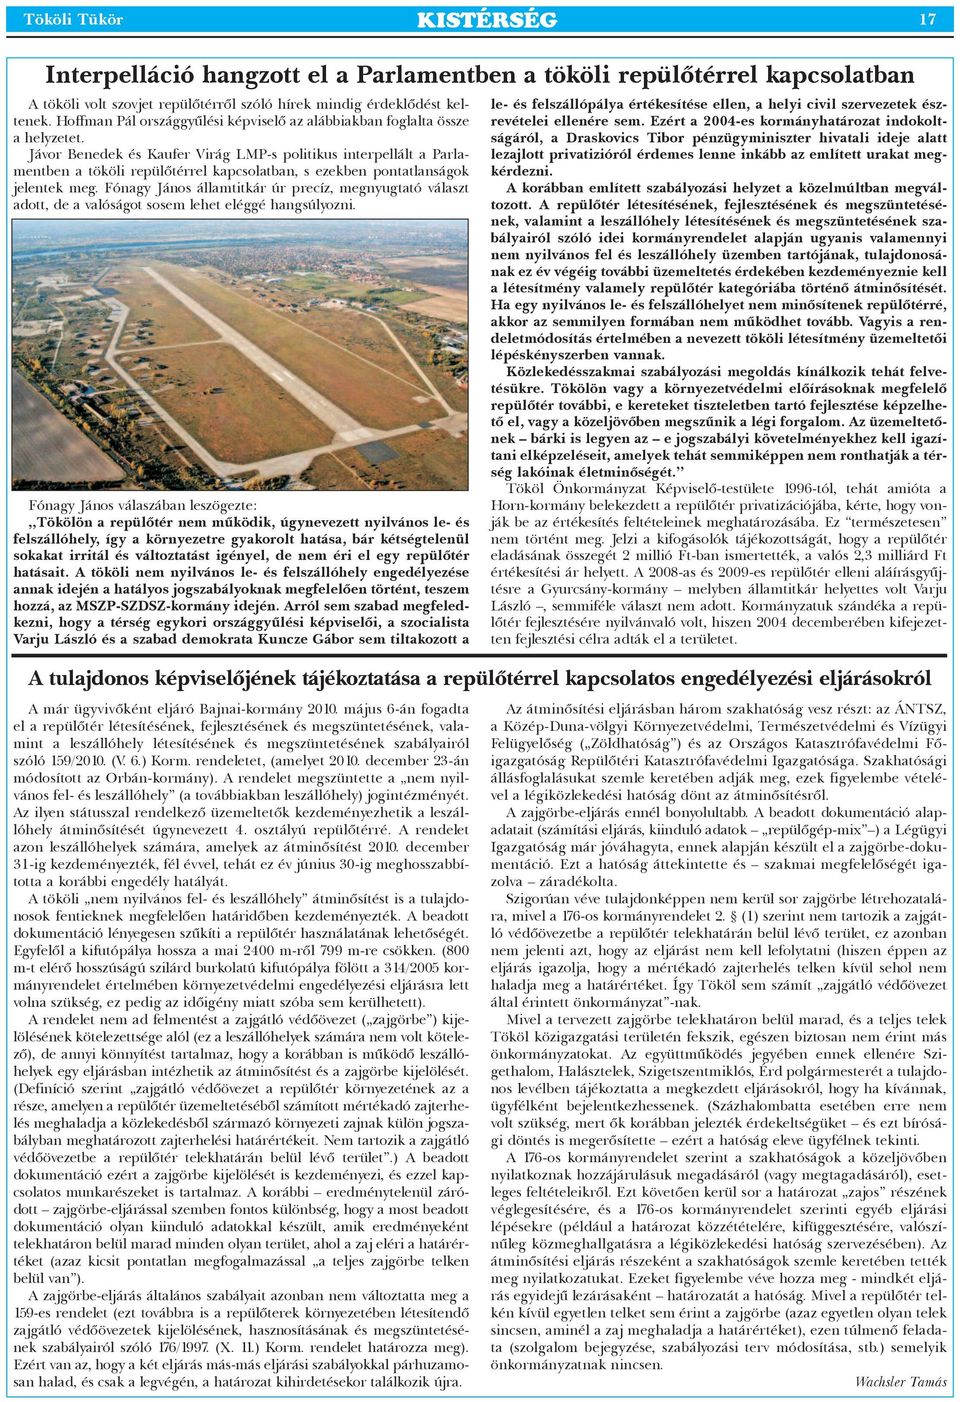 Jávor Benedek és Kaufer Virág LMP-s politikus interpellált a Par la - ment ben a tököli repülőtérrel kapcsolatban, s ezekben pontatlanságok jelentek meg.